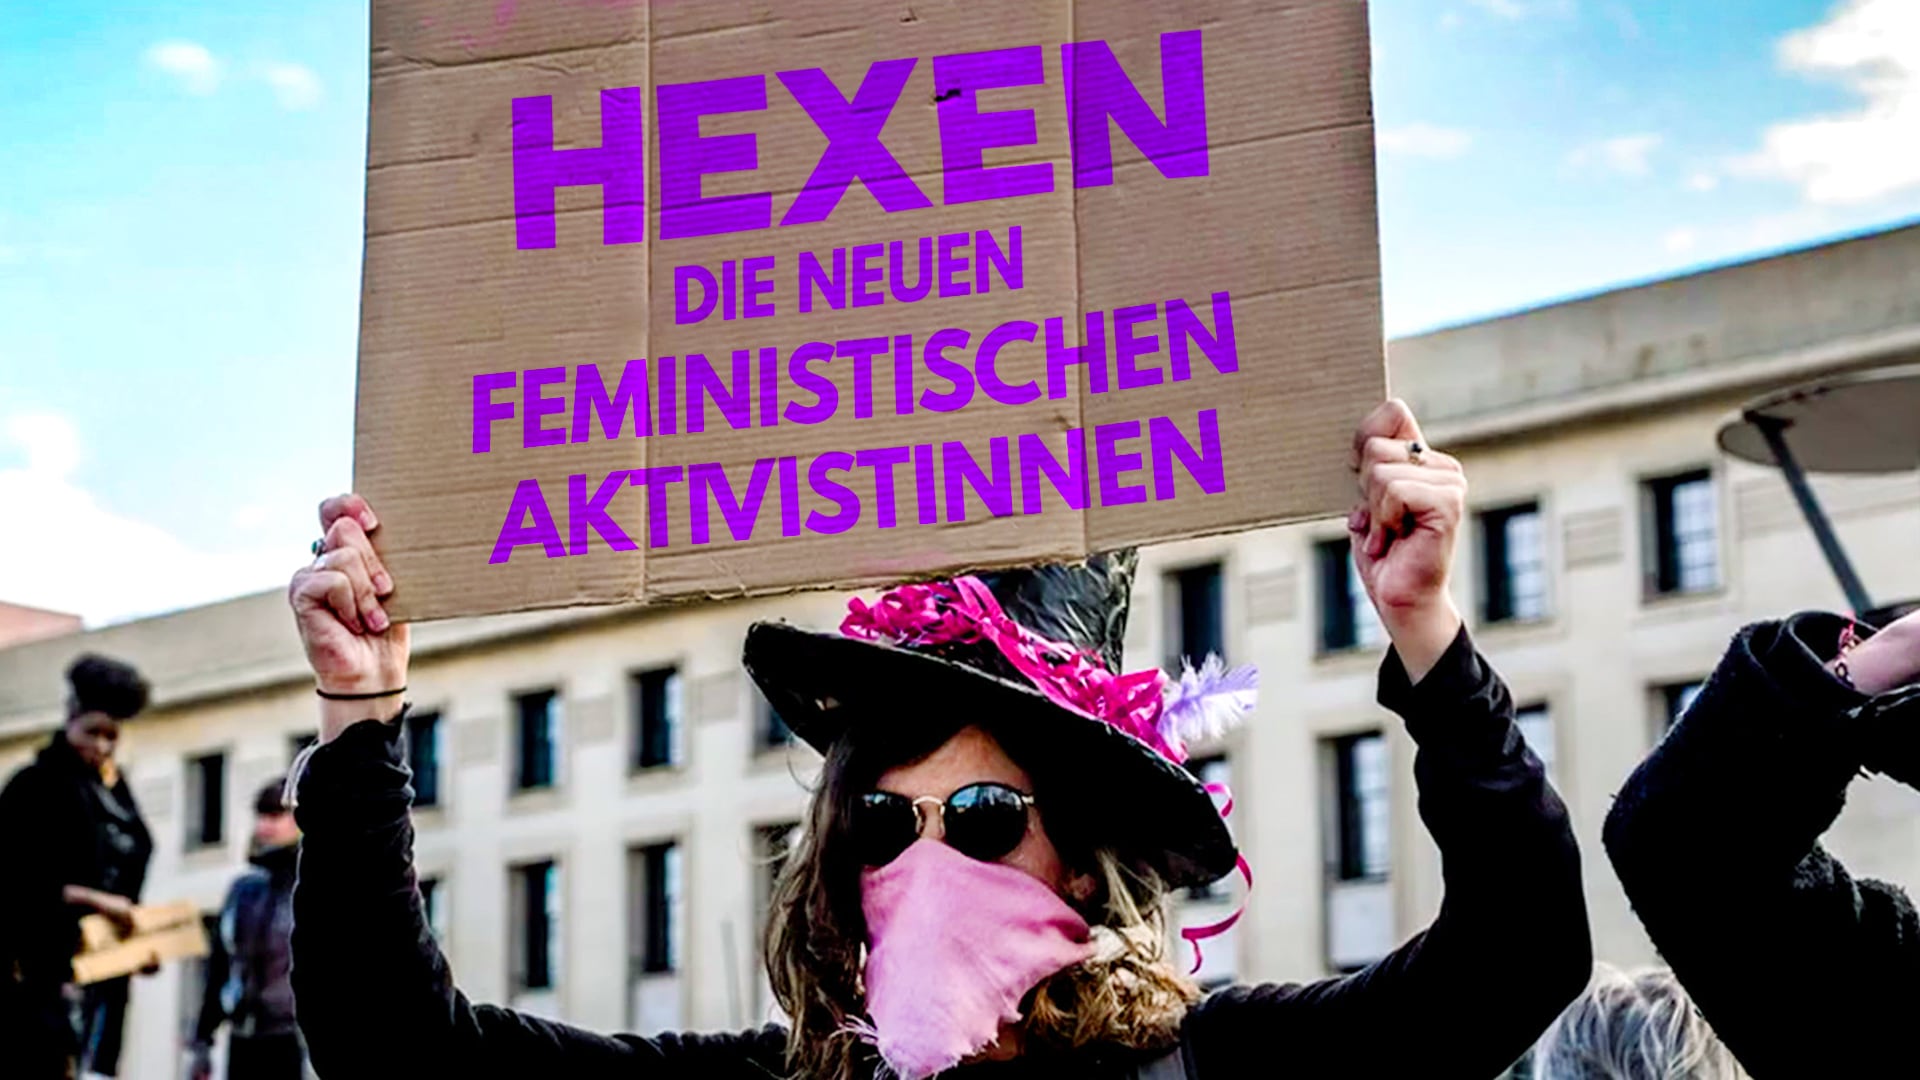 Hexen: die neuen feministischen Aktivistinnen